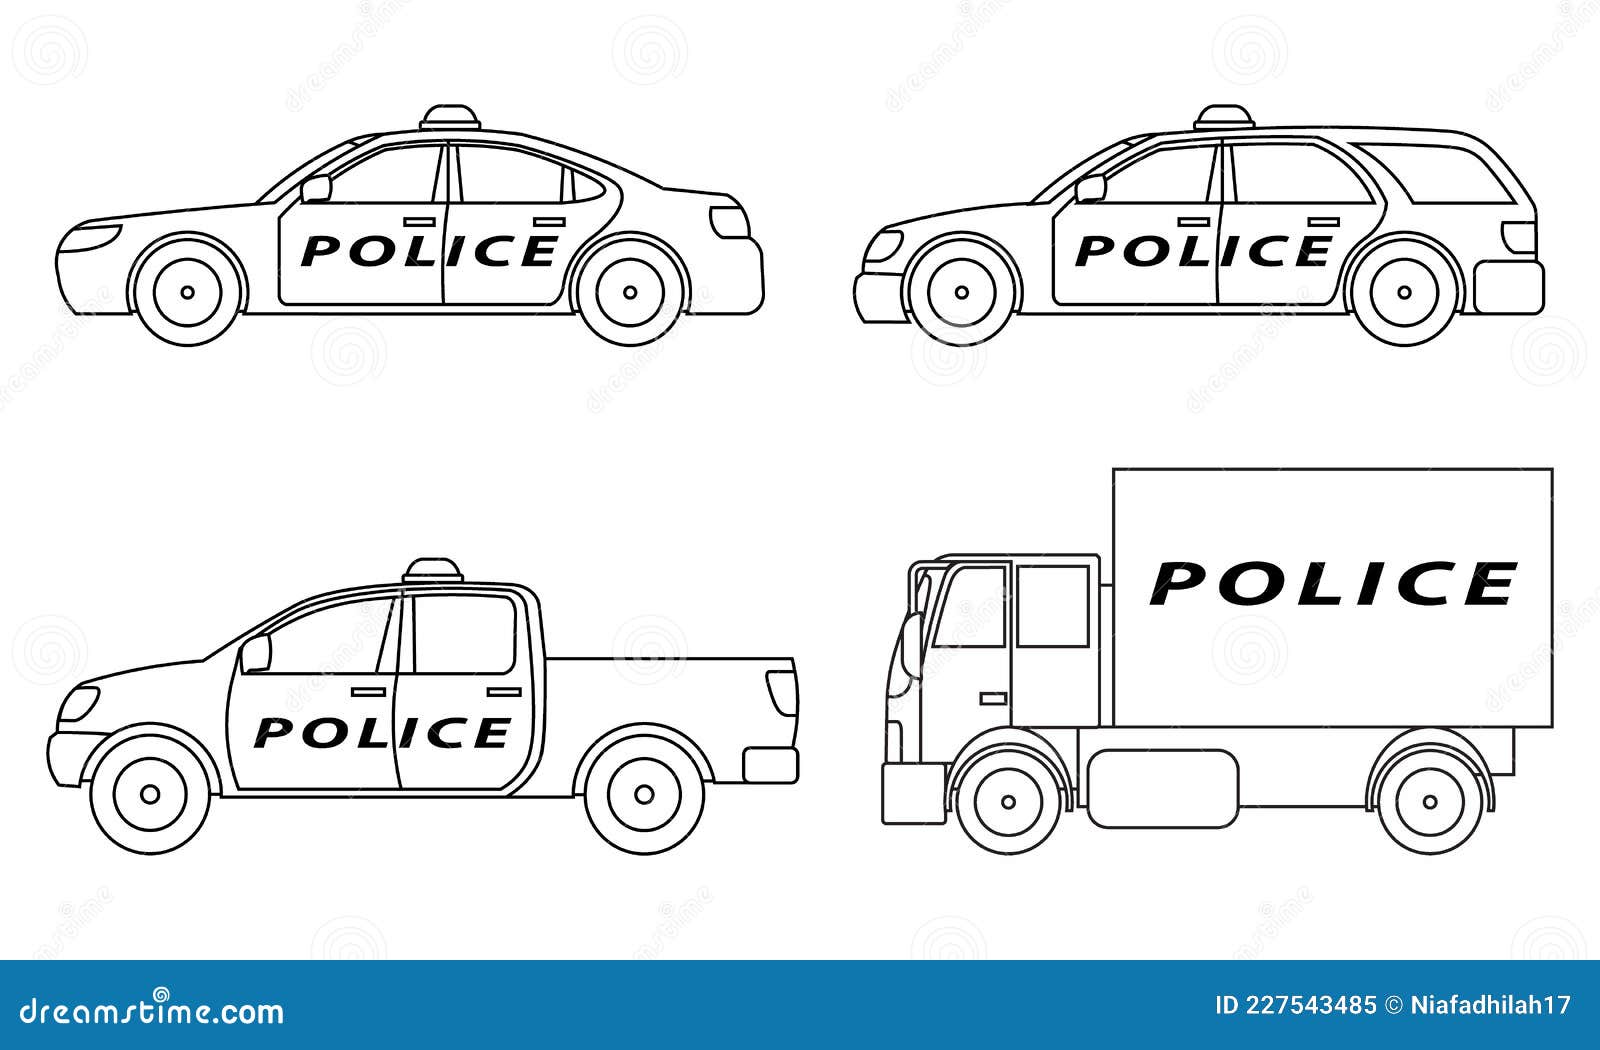 Comment dessiner une voiture de police ?